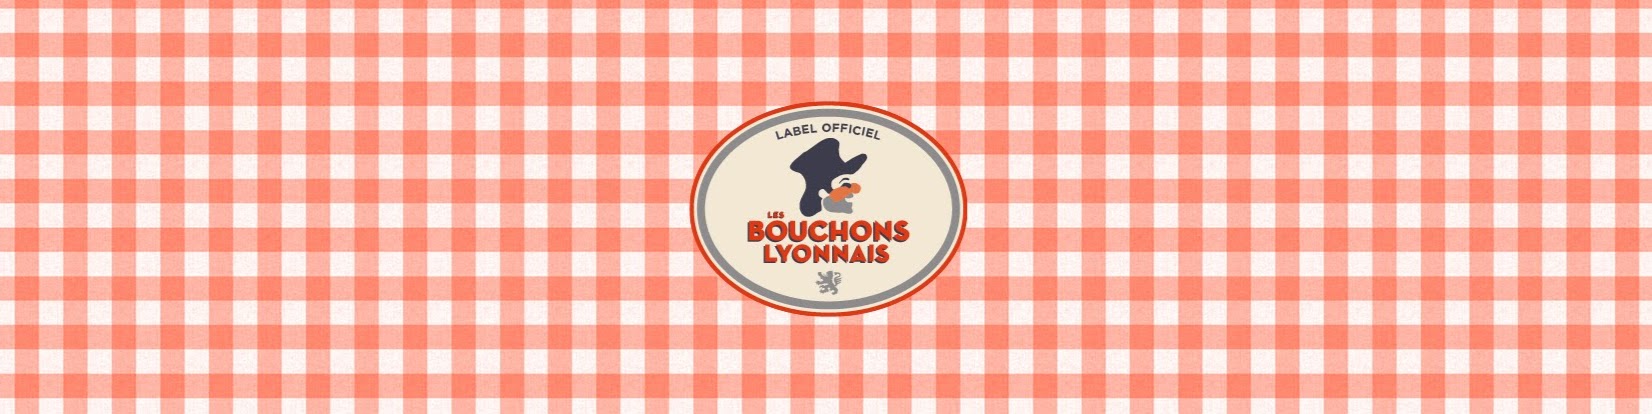 Label Les Bouchons Lyonnais